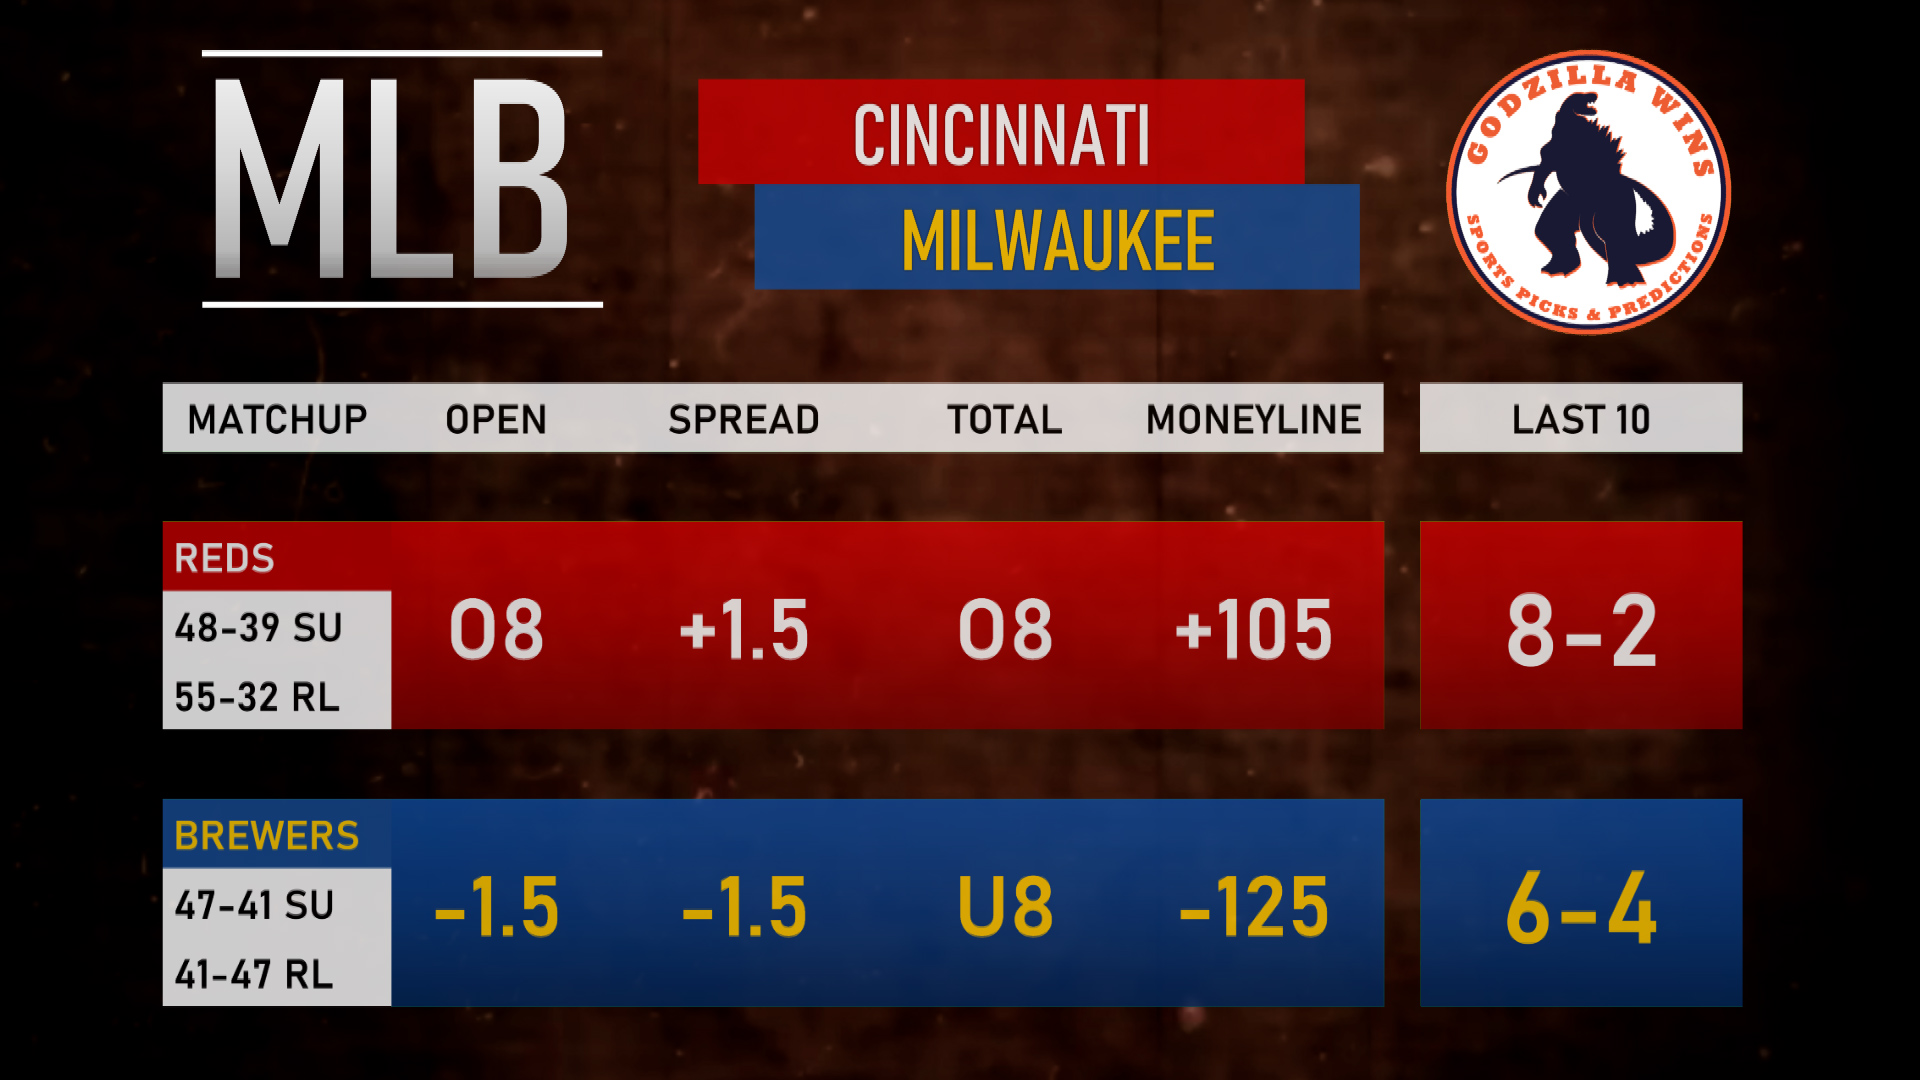 Cincinnati Reds vs. Milwaukee Brewers spread